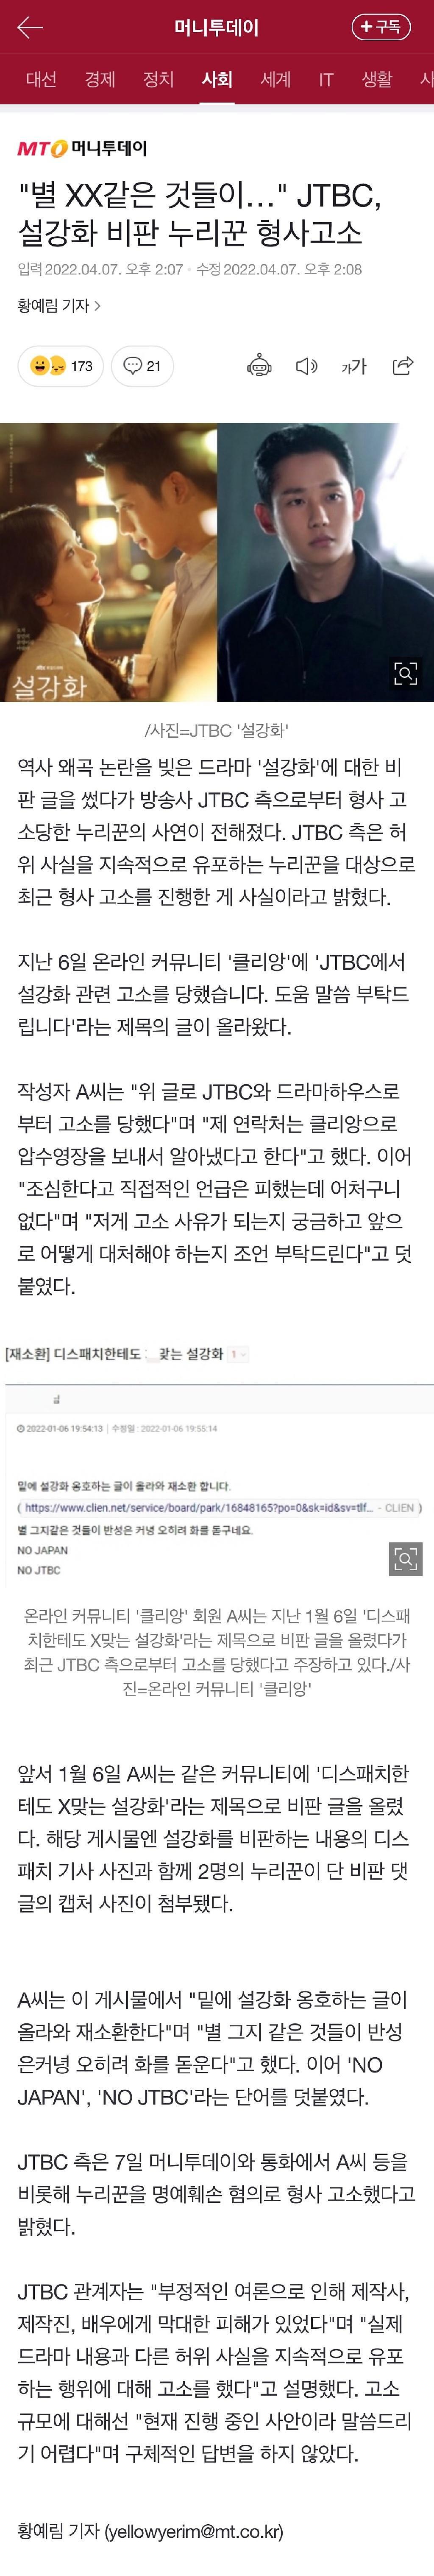 电视台 JTBC 方起诉《雪滴花》恶评者 曾因歪曲历史引发争议 - 1